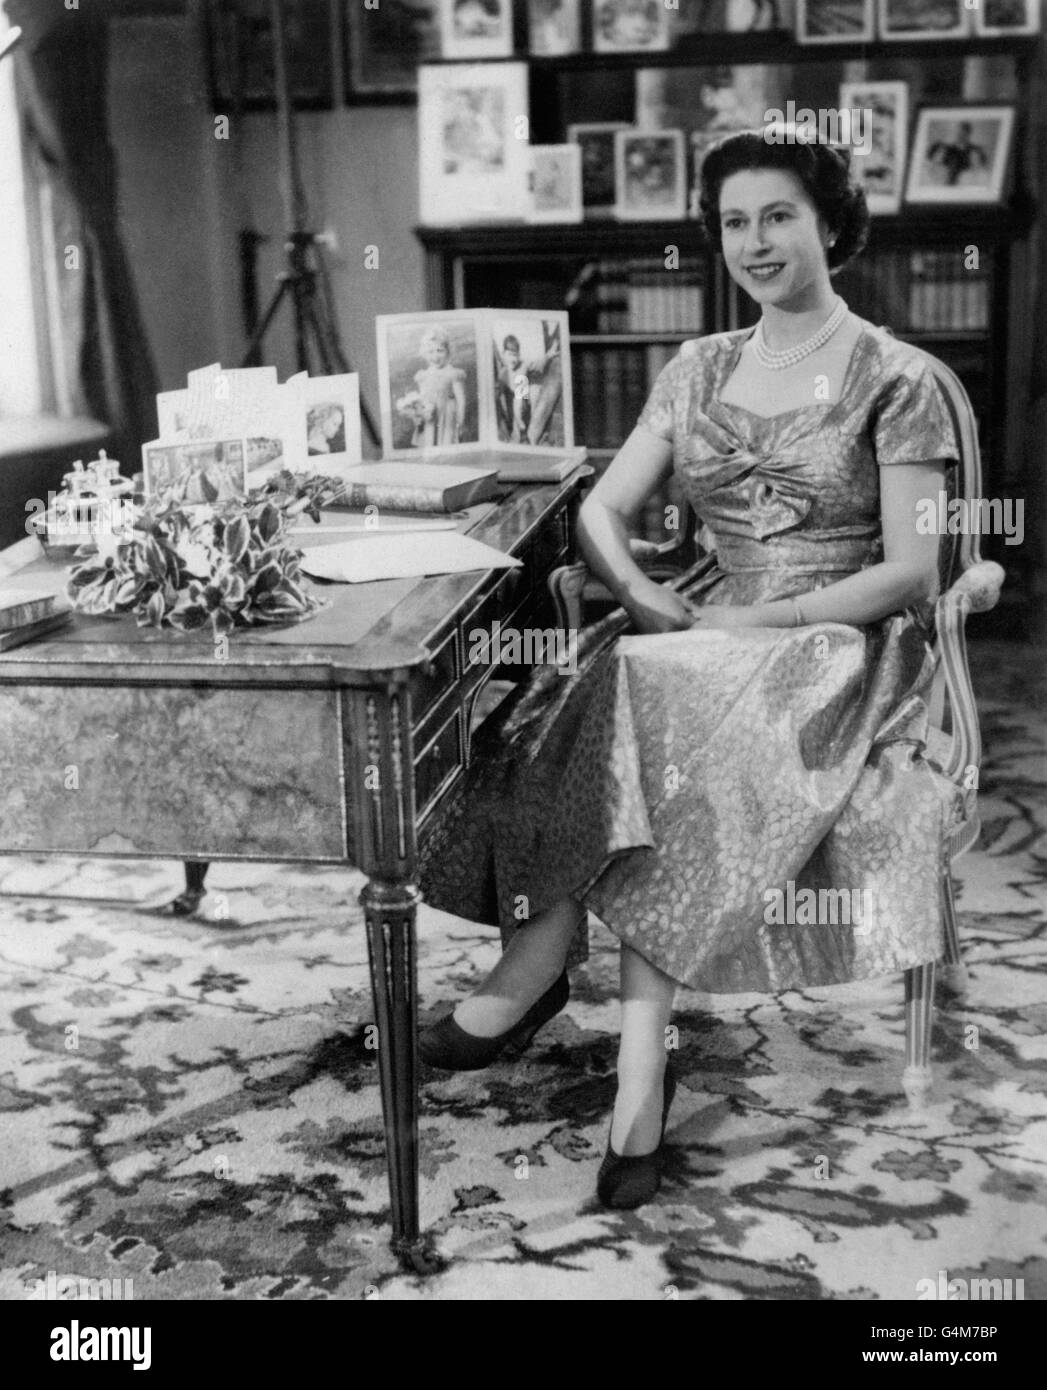 Die Königin, in einem goldgelähmten Kleid, wird in der Long Library in Sandringham kurz nach der Übertragung des traditionellen Weihnachtstages an ihre Völker gesehen. Auf dem Schreibtisch befinden sich Porträts von Prinz Charles und Prinzessin Anne. Die Sendung wurde zum ersten Mal im Fernsehen übertragen und sowohl von der BBC als auch von ITV übertragen. Es war der 25. Jahrestag der ersten Radiobotschaft ihres Großvaters, König George V. an den Commonwealth Stockfoto